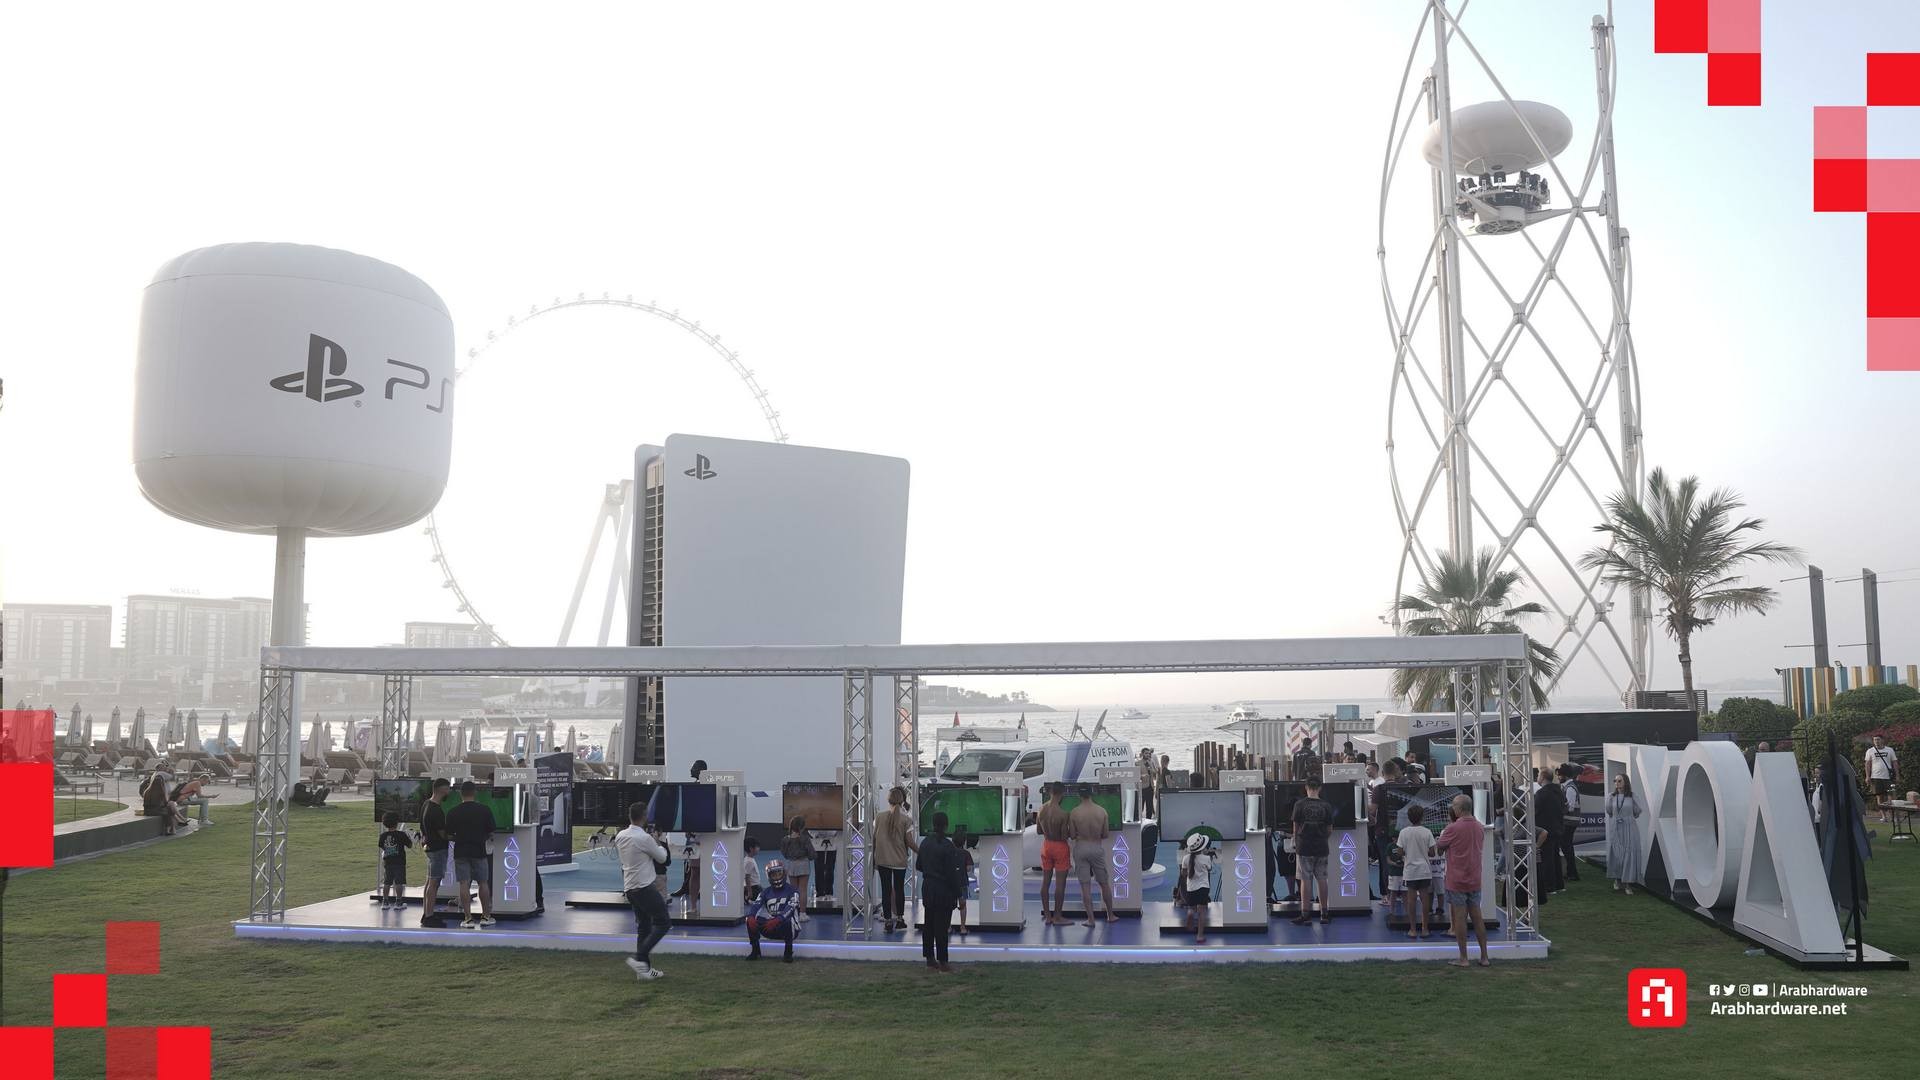 صور من حدث PS5 في دبي من بلايستيشن 5